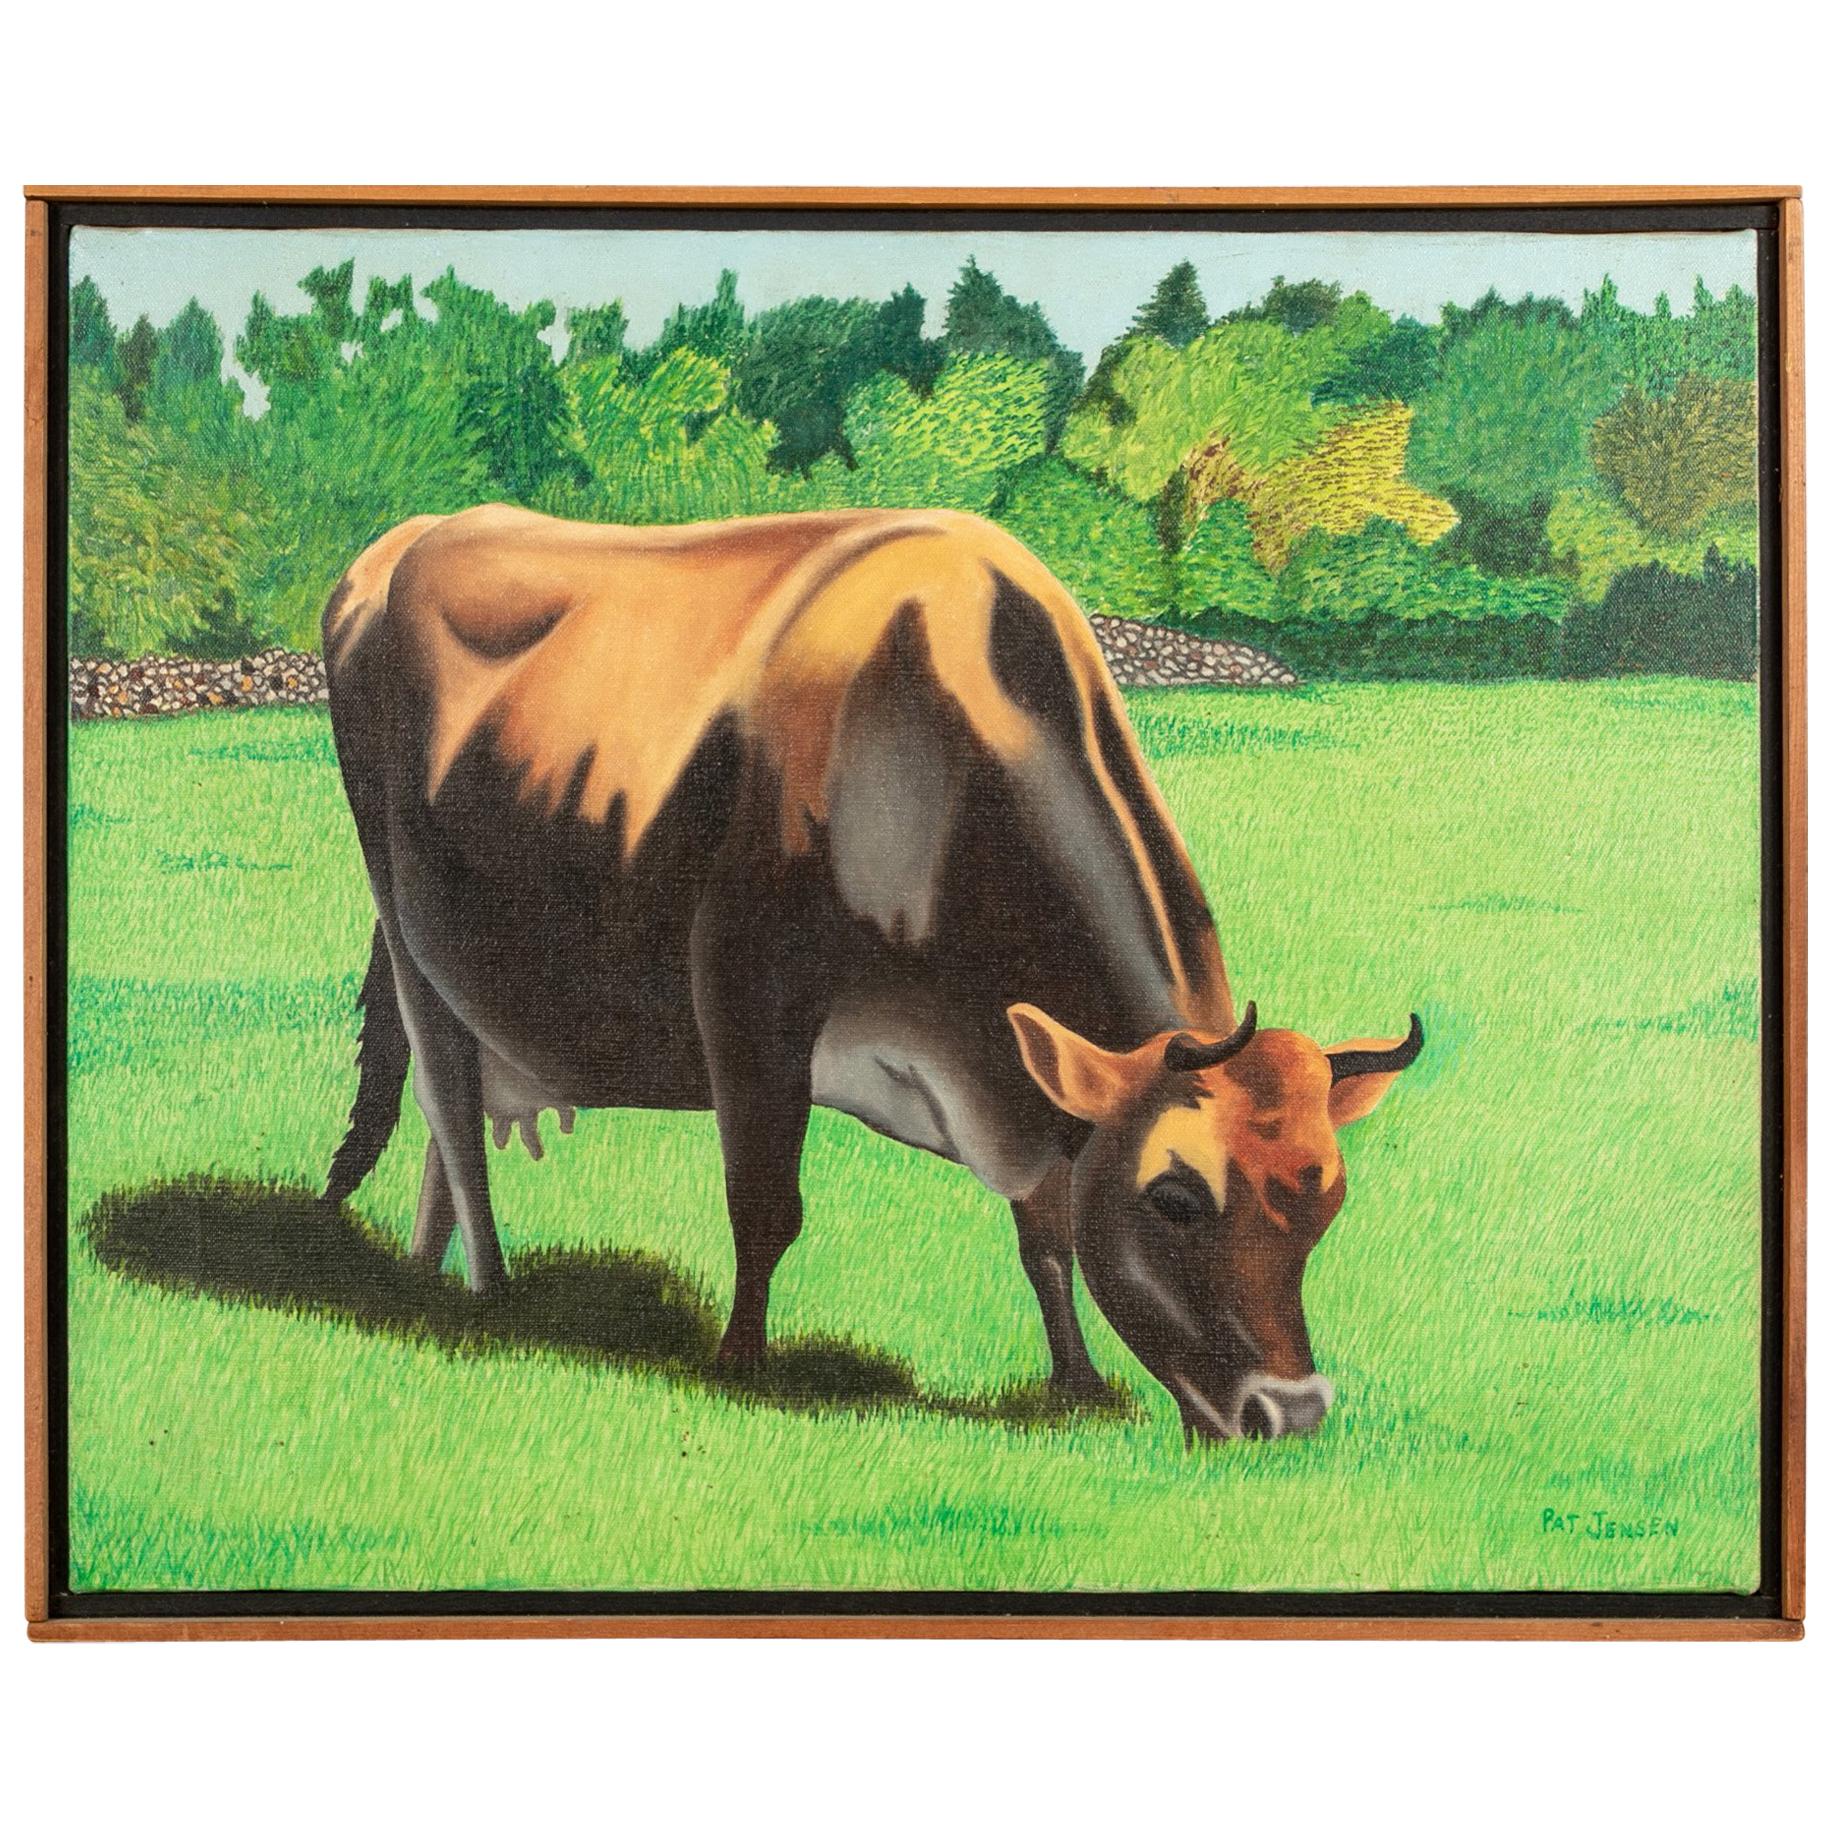 Pat Jensen Oil on Canvas, "Cowscape #4"